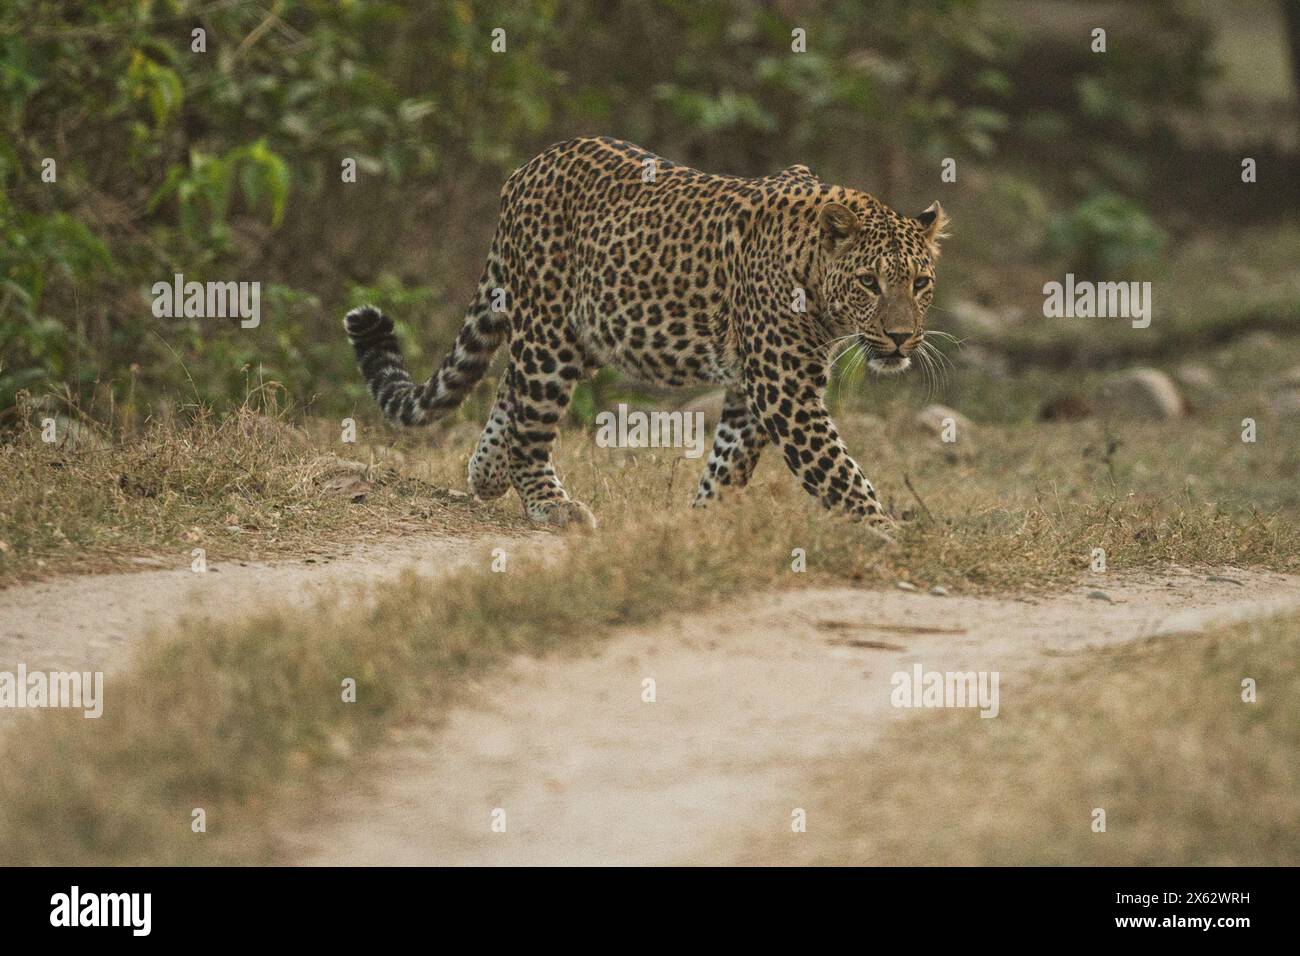 Indian wildlife tourism Stock Photo